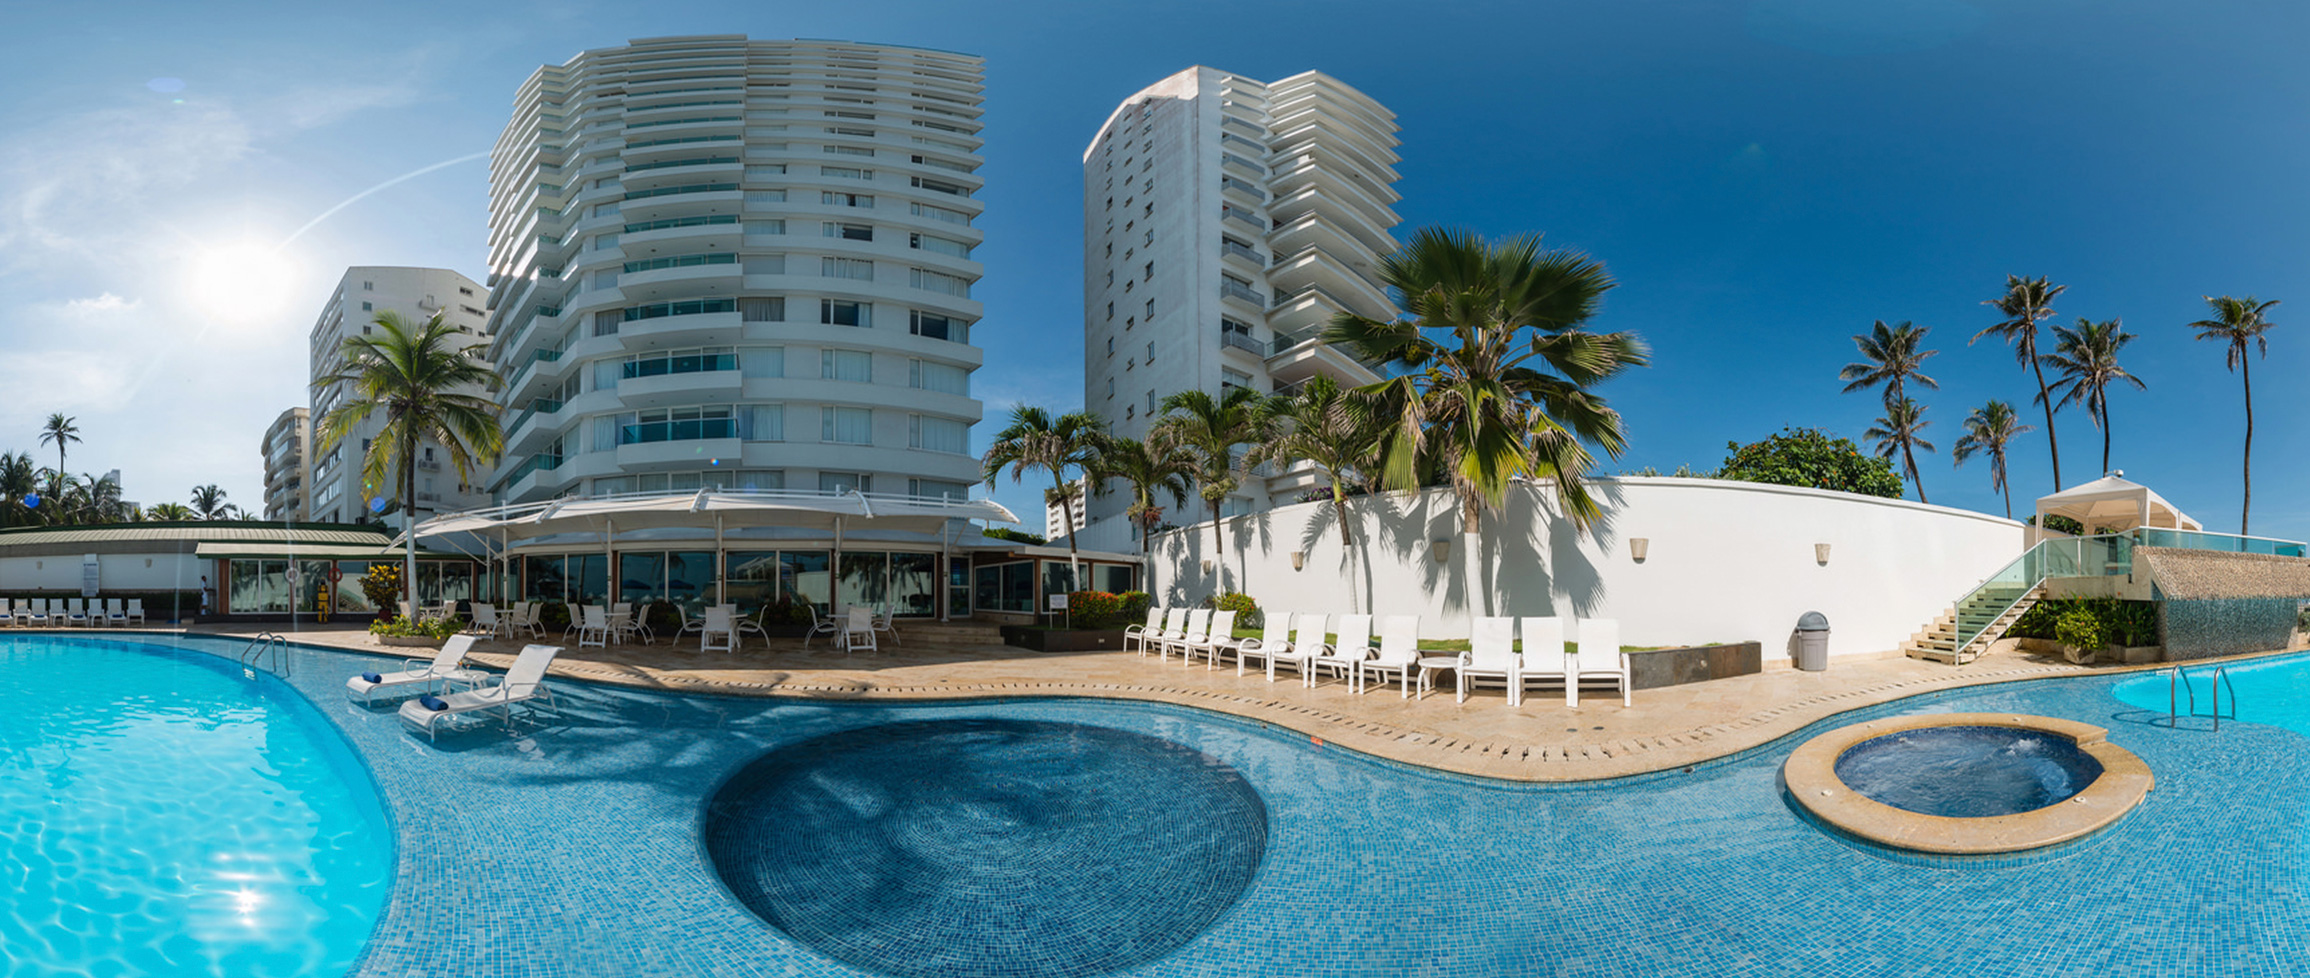 Hotel Dann Cartagena - Hotel Dann Cartagena. Hotel en la Playa de Bocagrande con acceso directo al mar. Cartagena de Indias, Colombia.